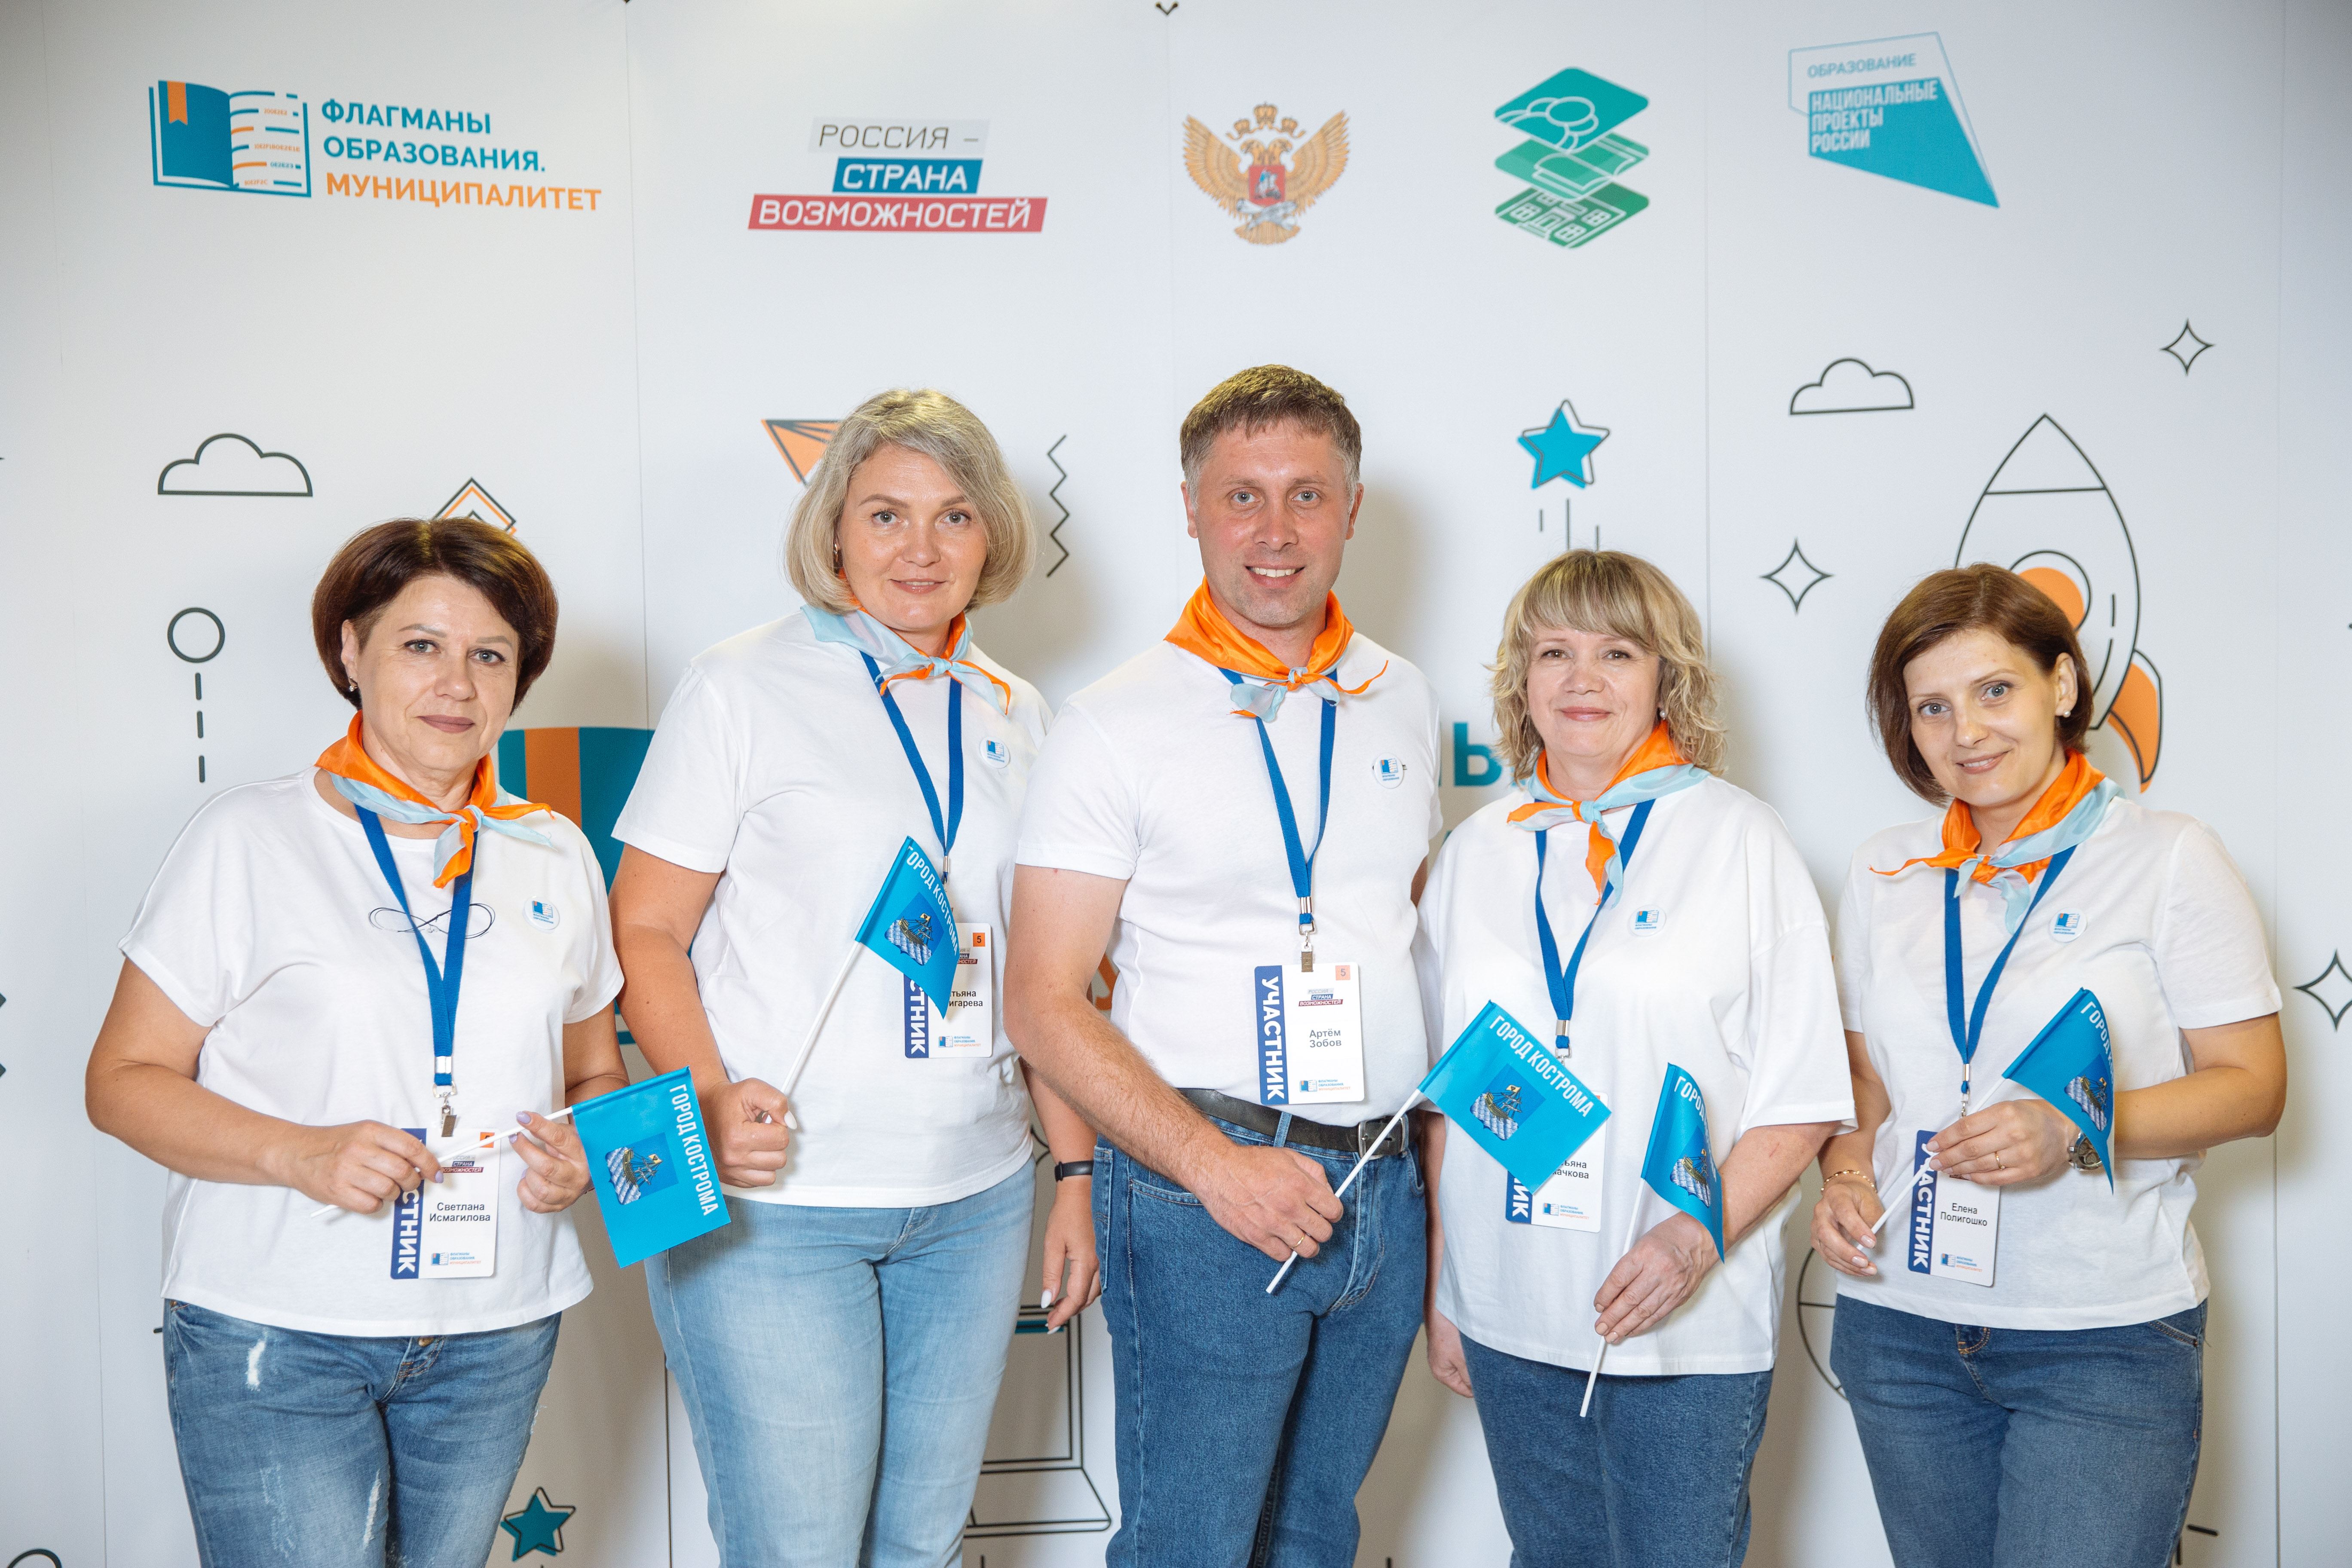 Команда костромичей вышла в полуфинал всероссийского конкурса «Флагманы образования»